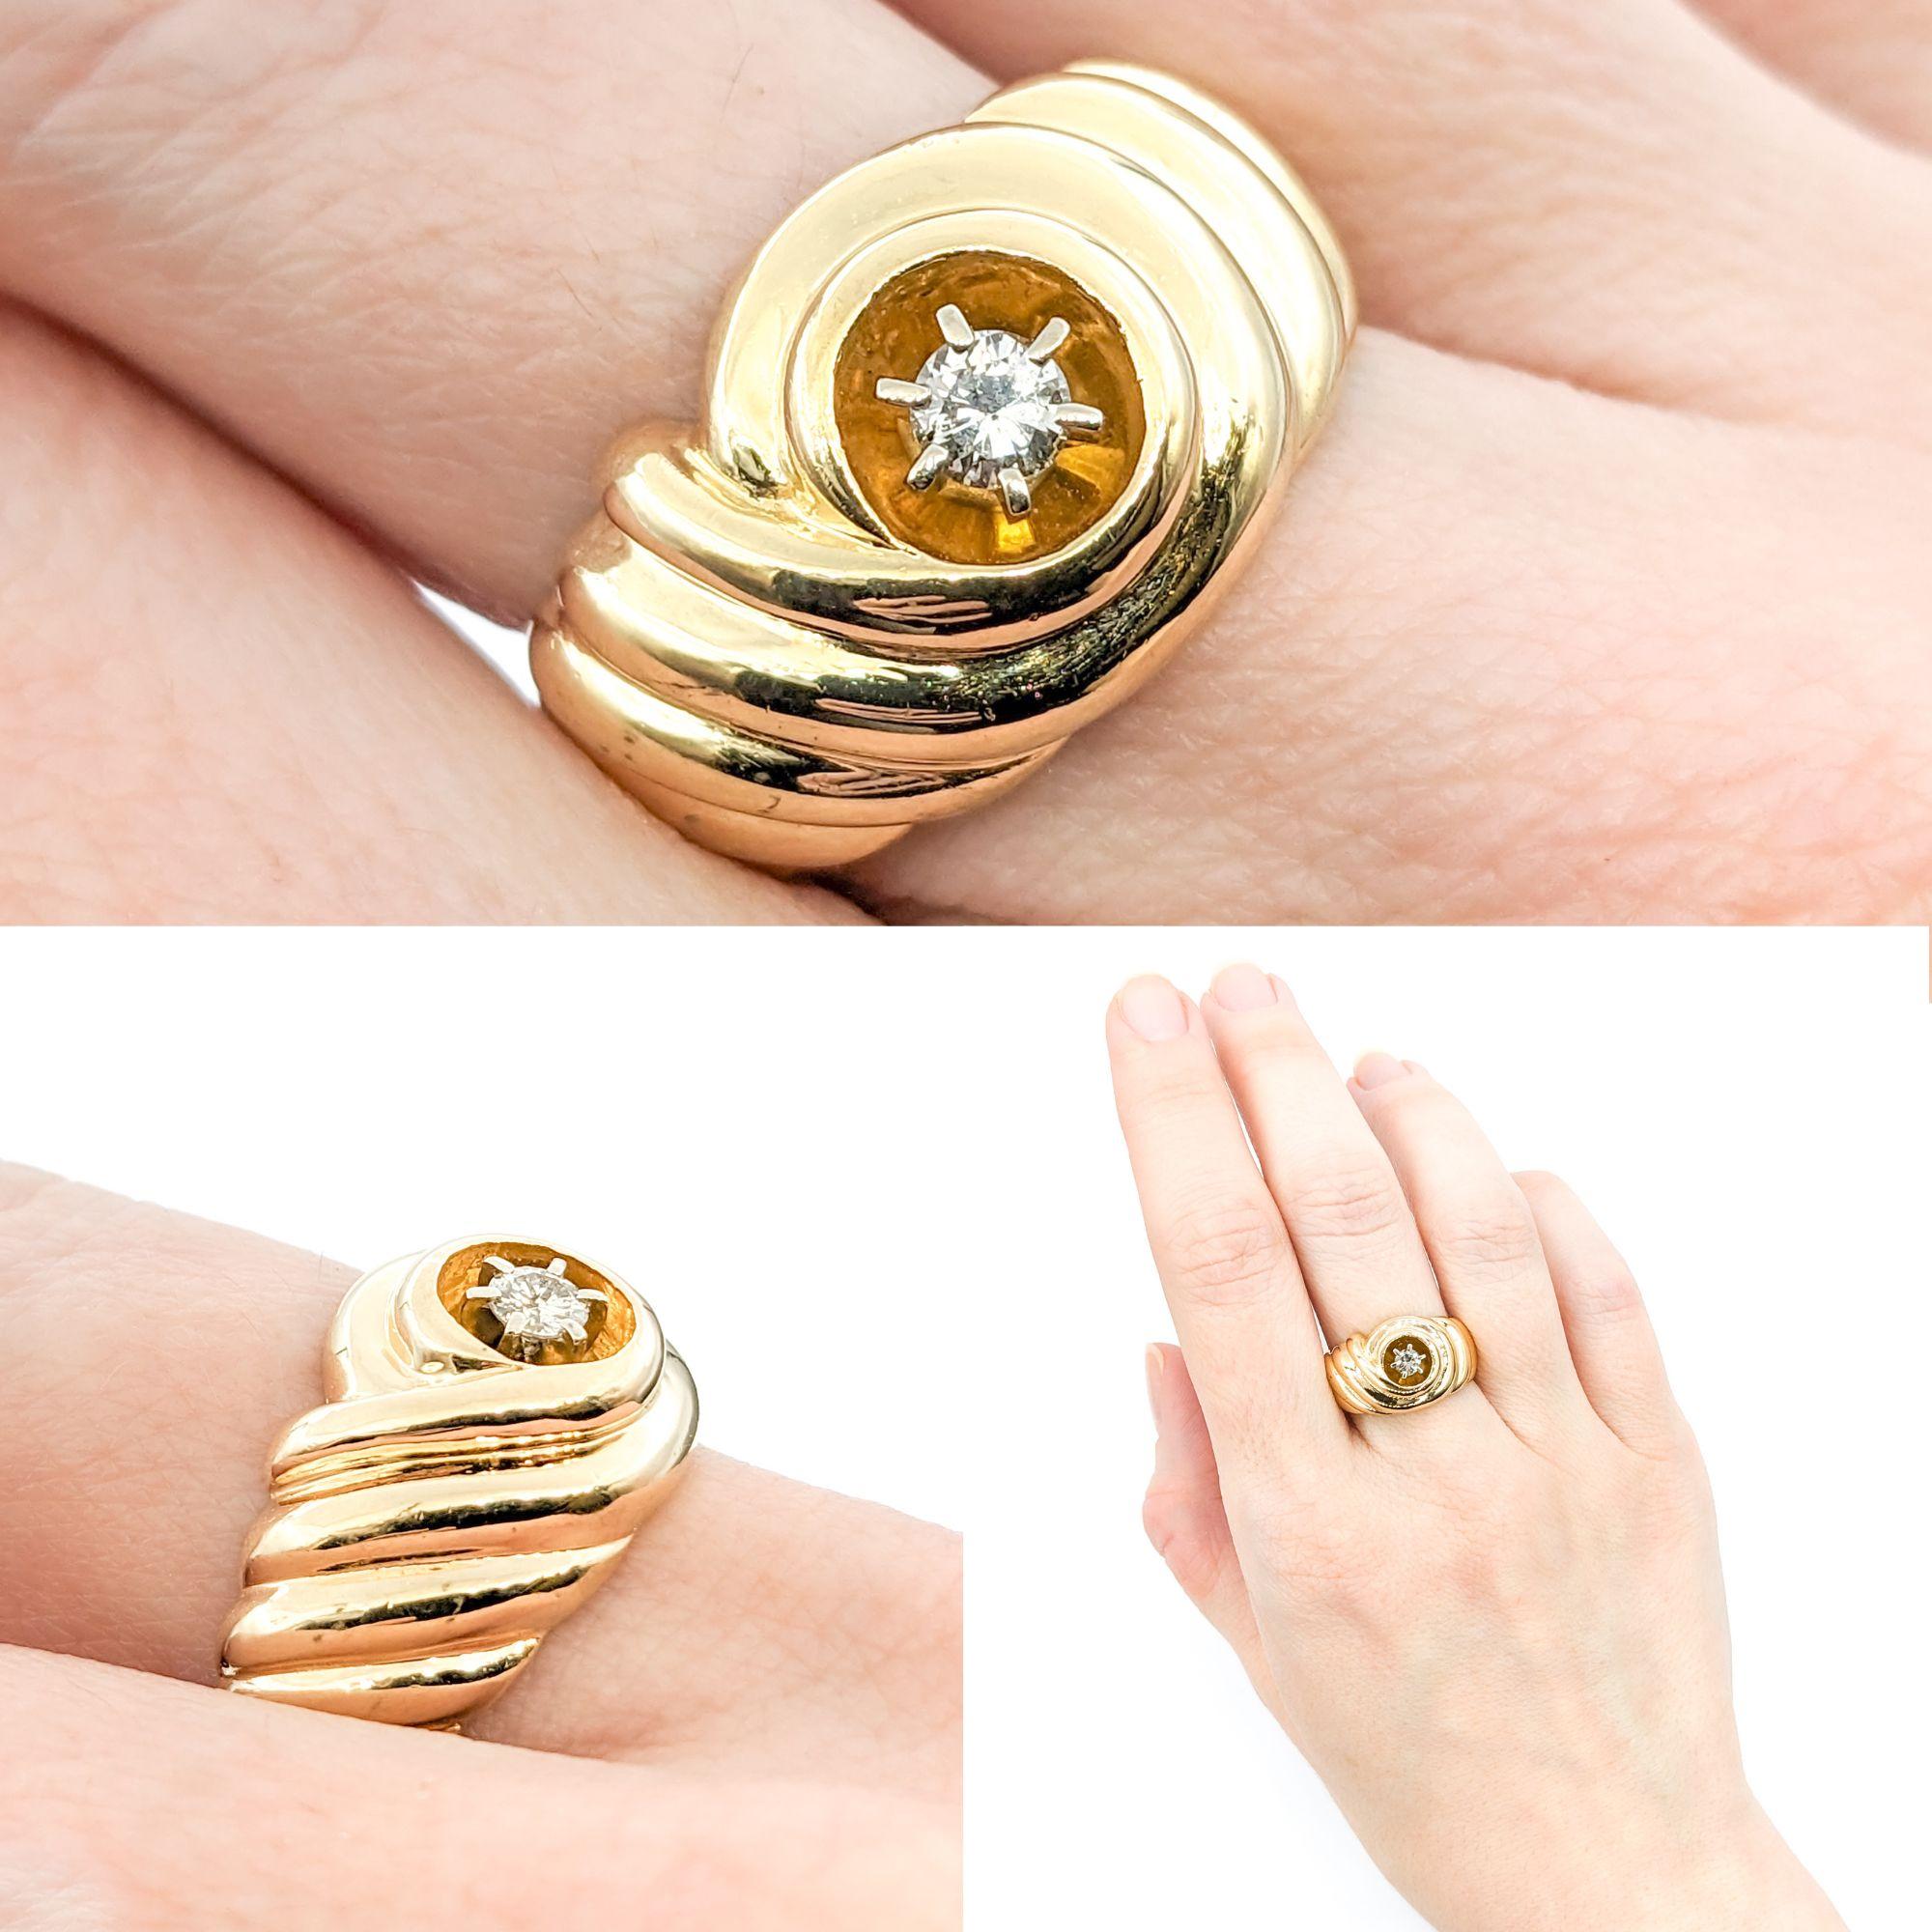 .15ct Diamond Swirl Design Ring in Gelbgold

Wir enthüllen einen atemberaubenden Diamant-Modenring, der meisterhaft aus 14-karätigem Gelbgold gefertigt ist. Dieses exquisite Stück ist mit einem 0,15-karätigen Diamanten geschmückt, der in einem